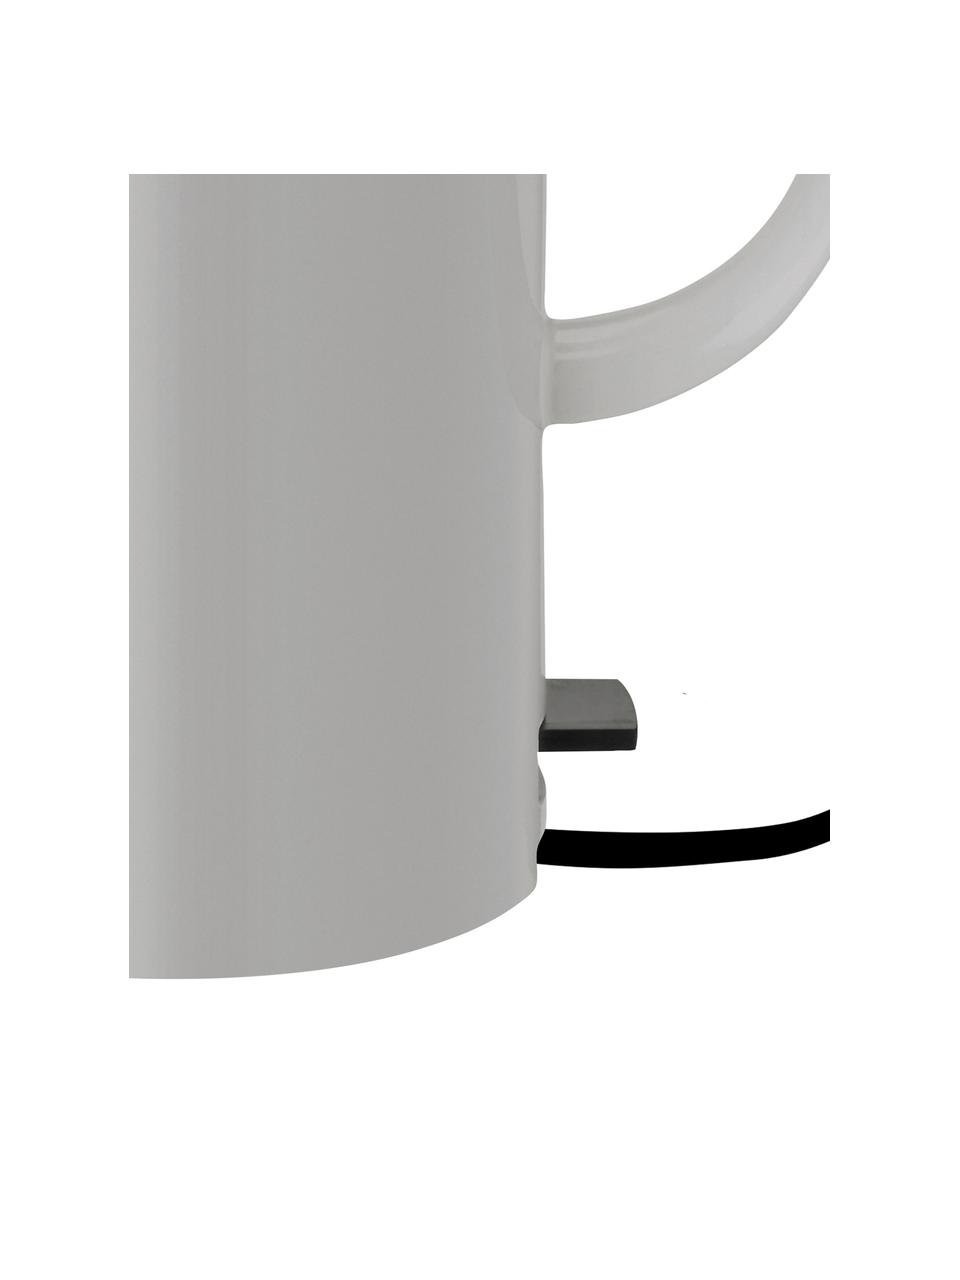 Wasserkocher EM77 in Grau glänzend, 1.5 L, Korpus: Edelstahl, Beschichtung: Emaille, Hellgrau, Schwarz, 1,5 L